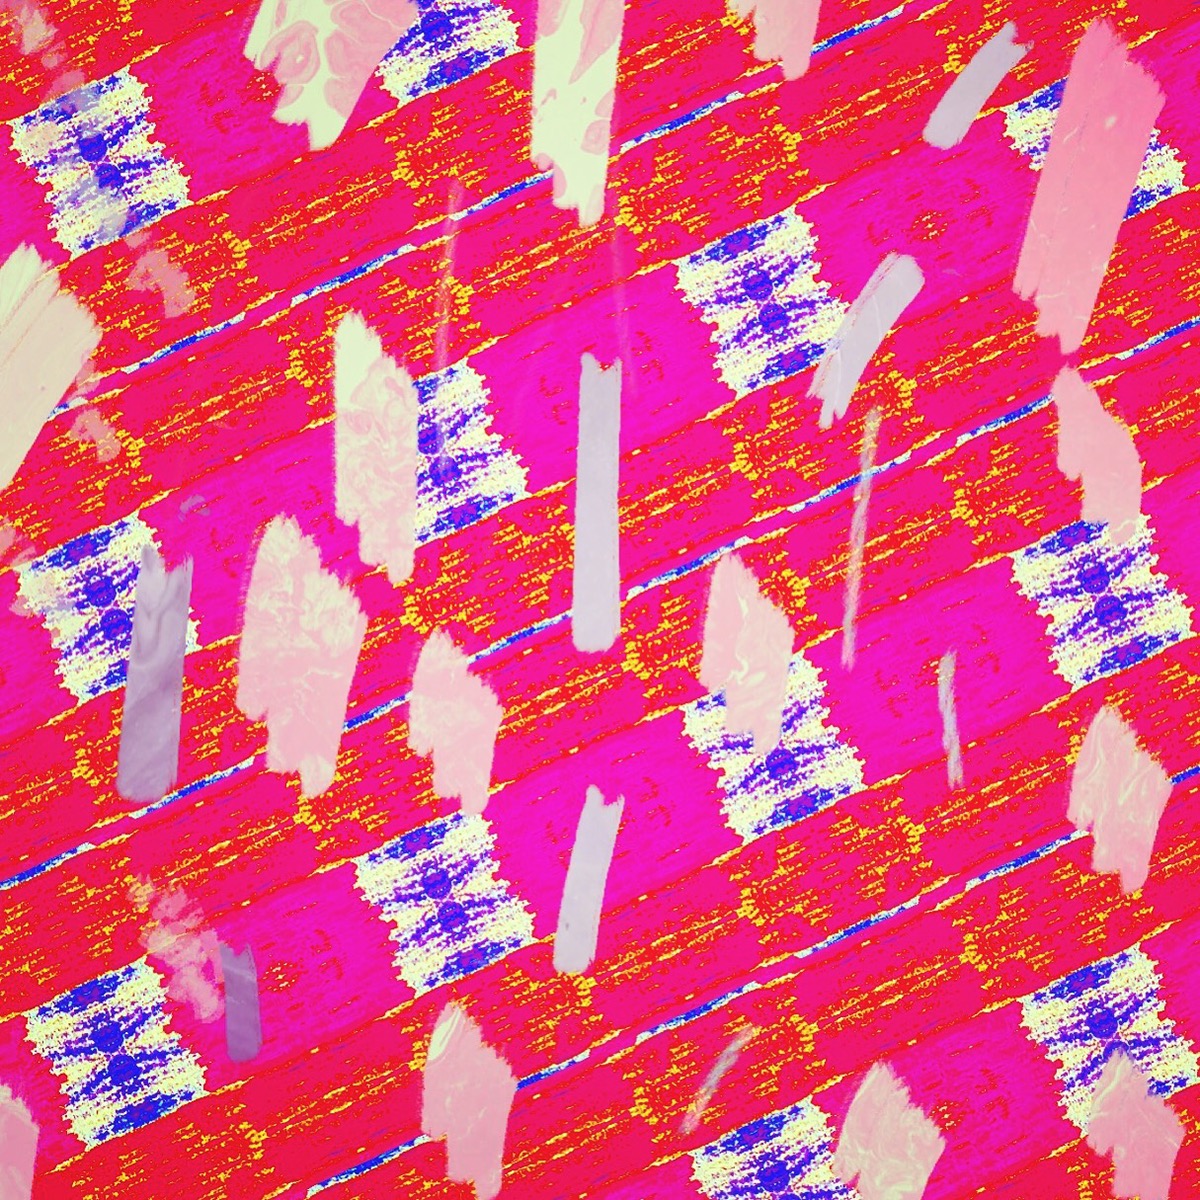 Stationery pattern fabric